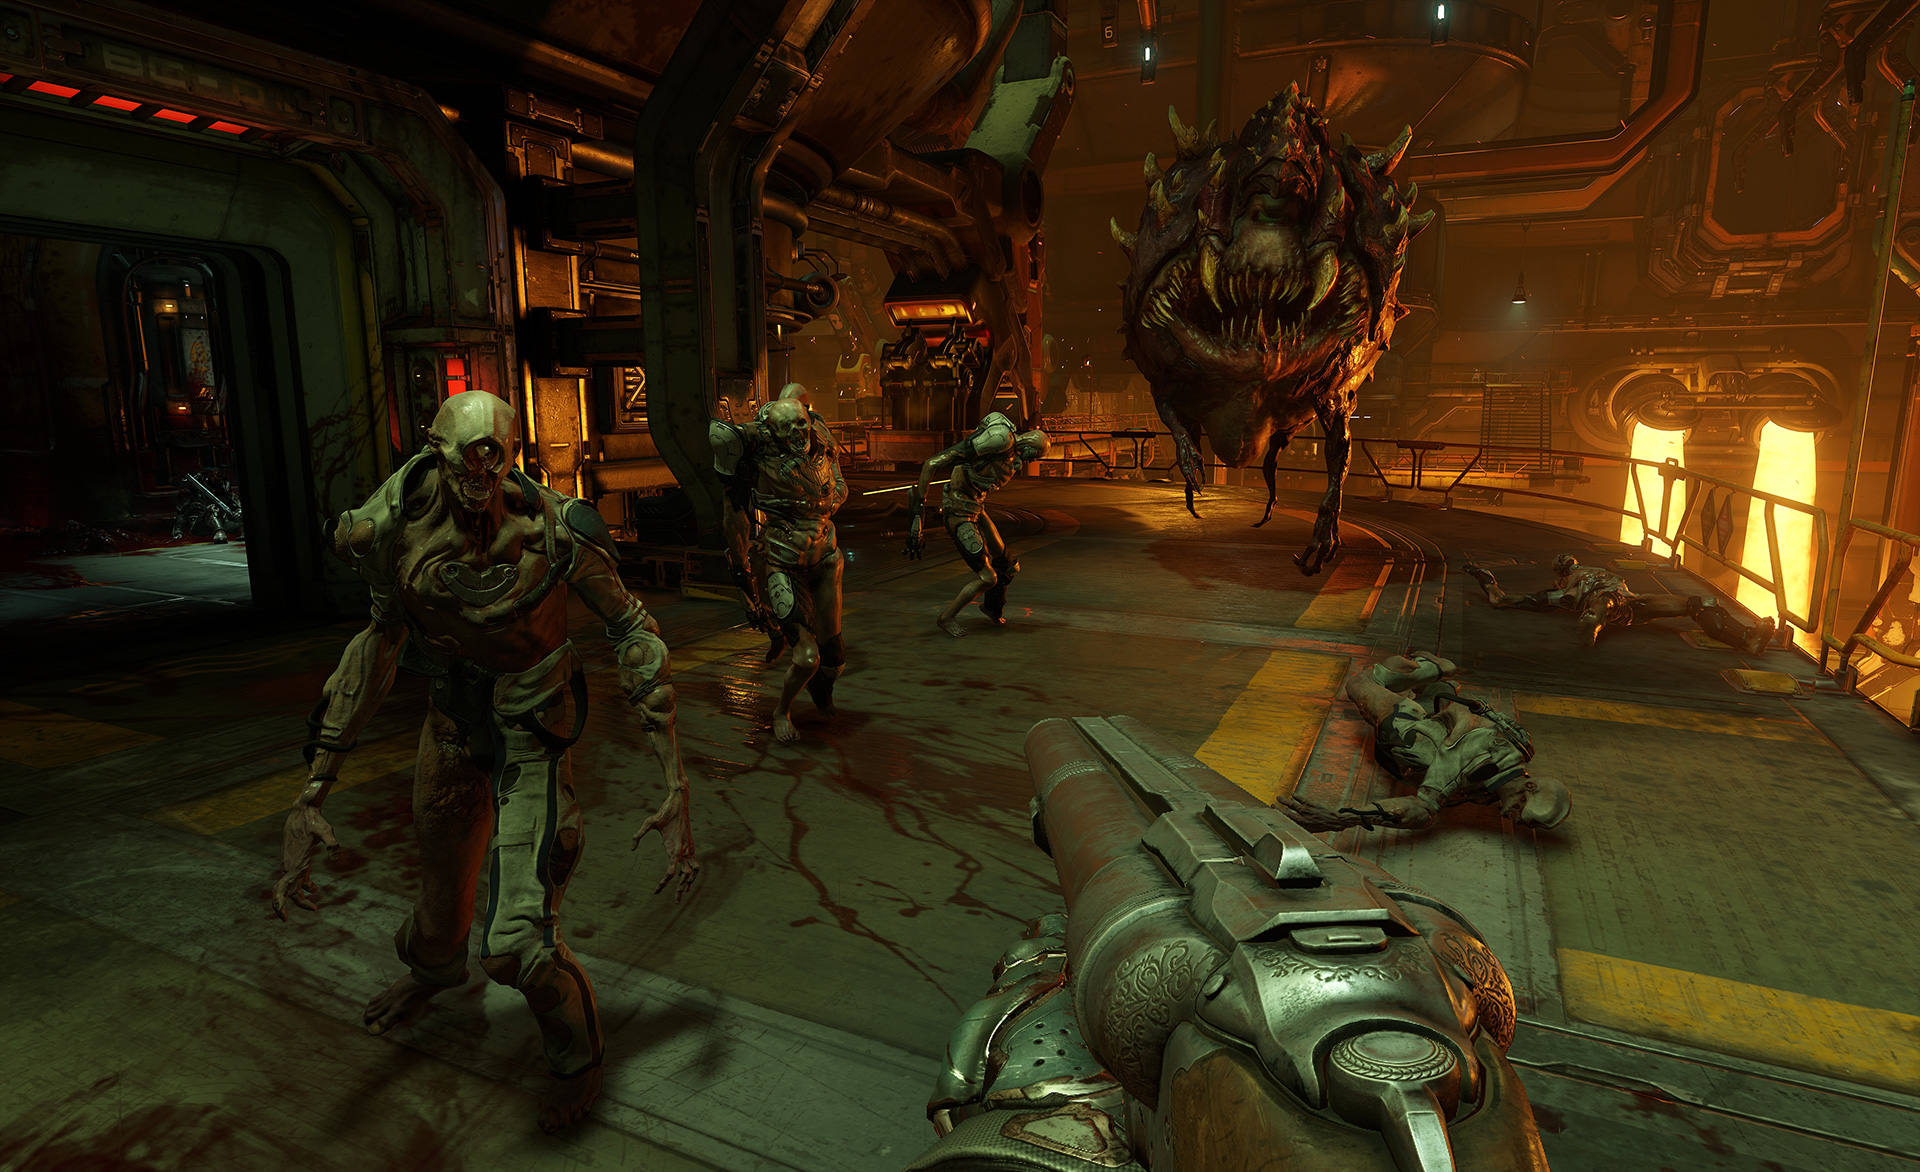 Doom ya tiene tráiler live action dispuesto a despertar todos tus sentidos. ¡Toca matar demonios!